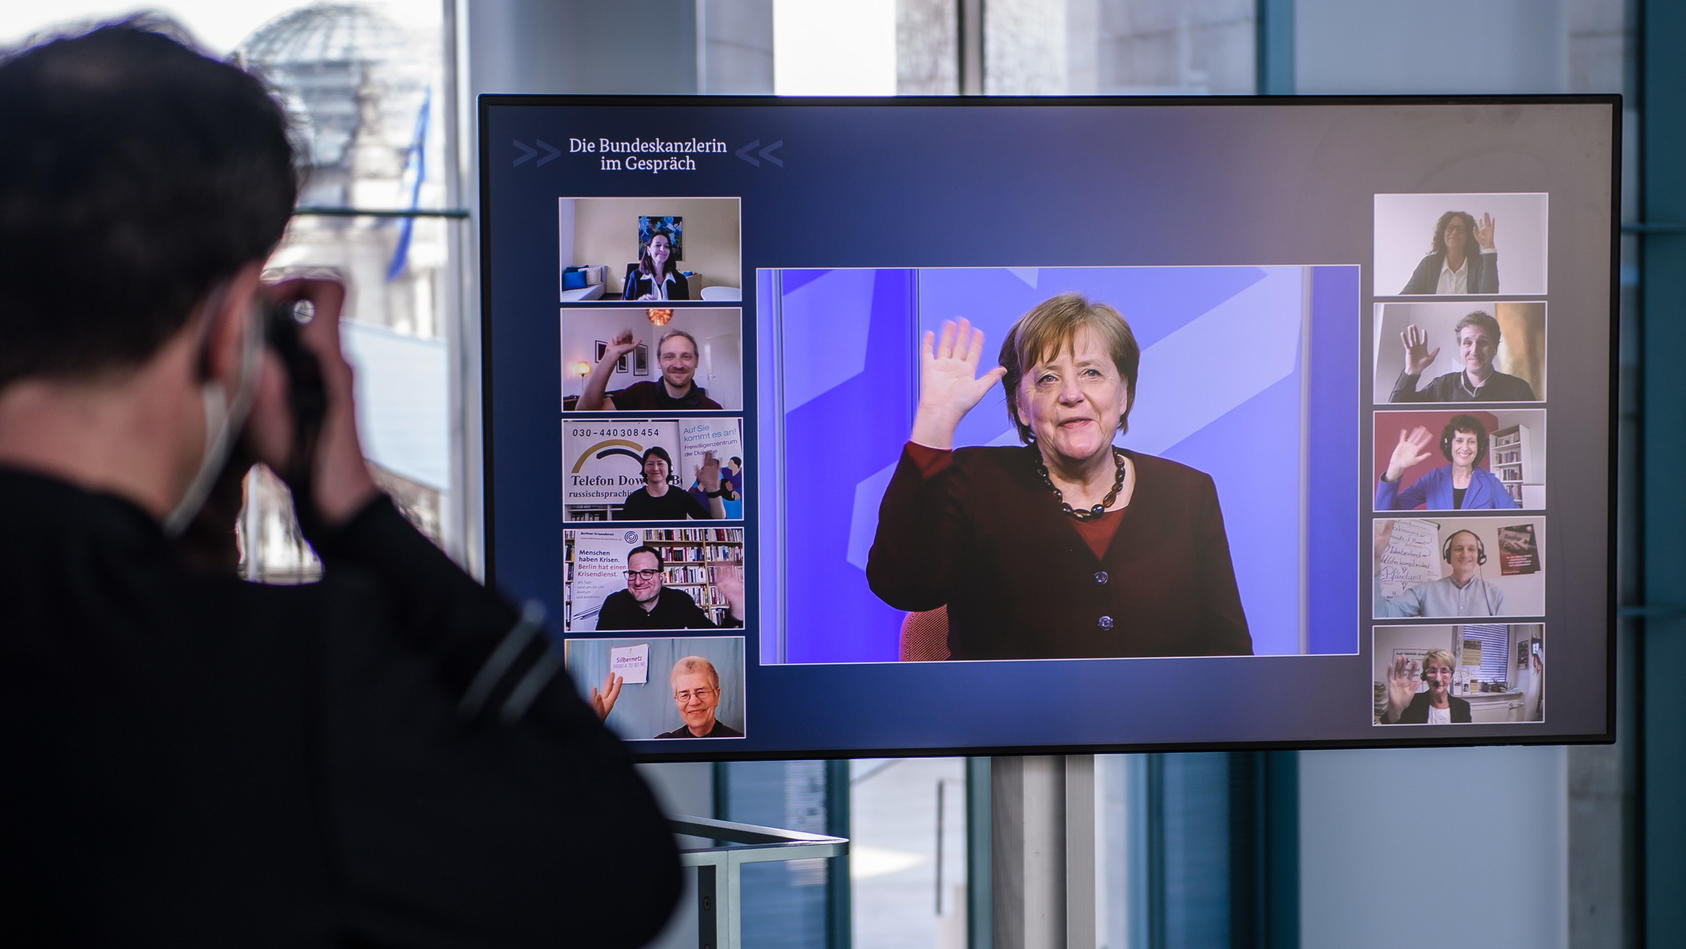 10.03.2021, Berlin: Bundeskanzlerin Angela Merkel winkt, als sie während einer Videokonferenz der digitalen Dialogreihe "Die Bundeskanzlerin im Gespräch" auf einem Bildschirm im Kanzleramt zu sehen ist. In der Dialogreihe "Die Bundeskanzlerin im Gesp